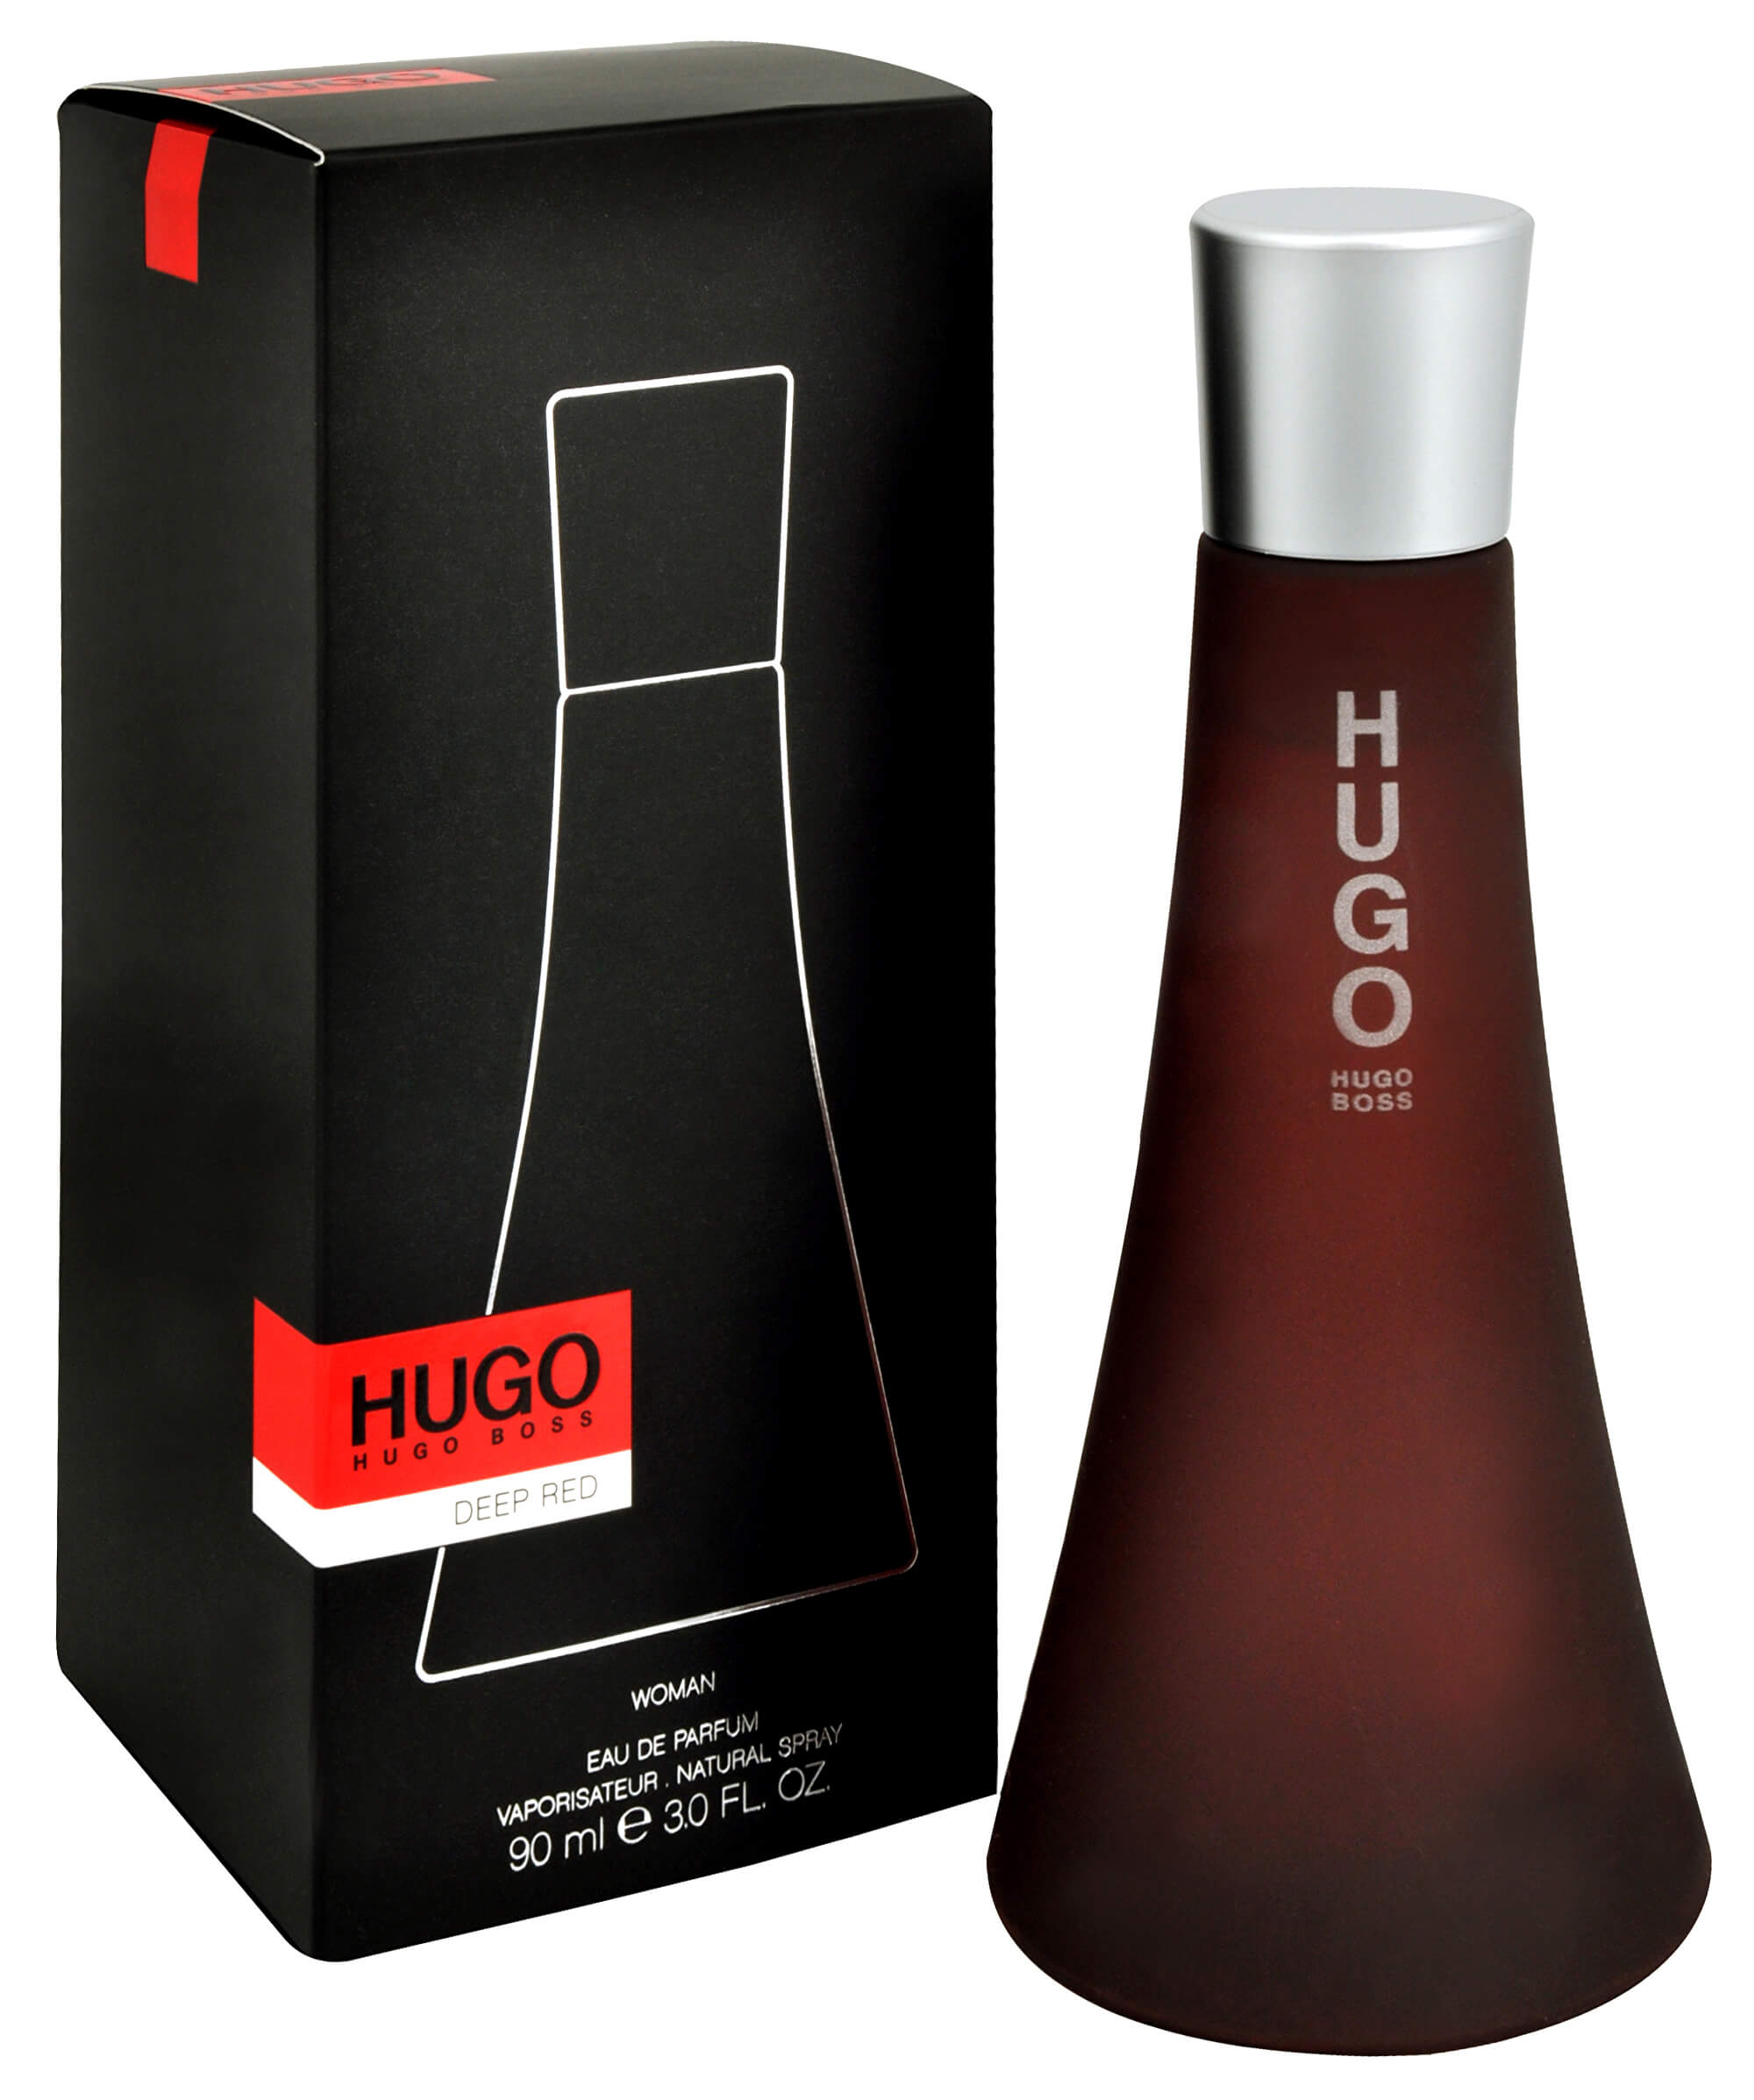 Хьюго босс черные. Хьюго босс дип ред. Хуго босс дип ред женские. Туалетная вода Hugo Boss Deep Red. Deep Red Eau de Parfum Hugo Boss.